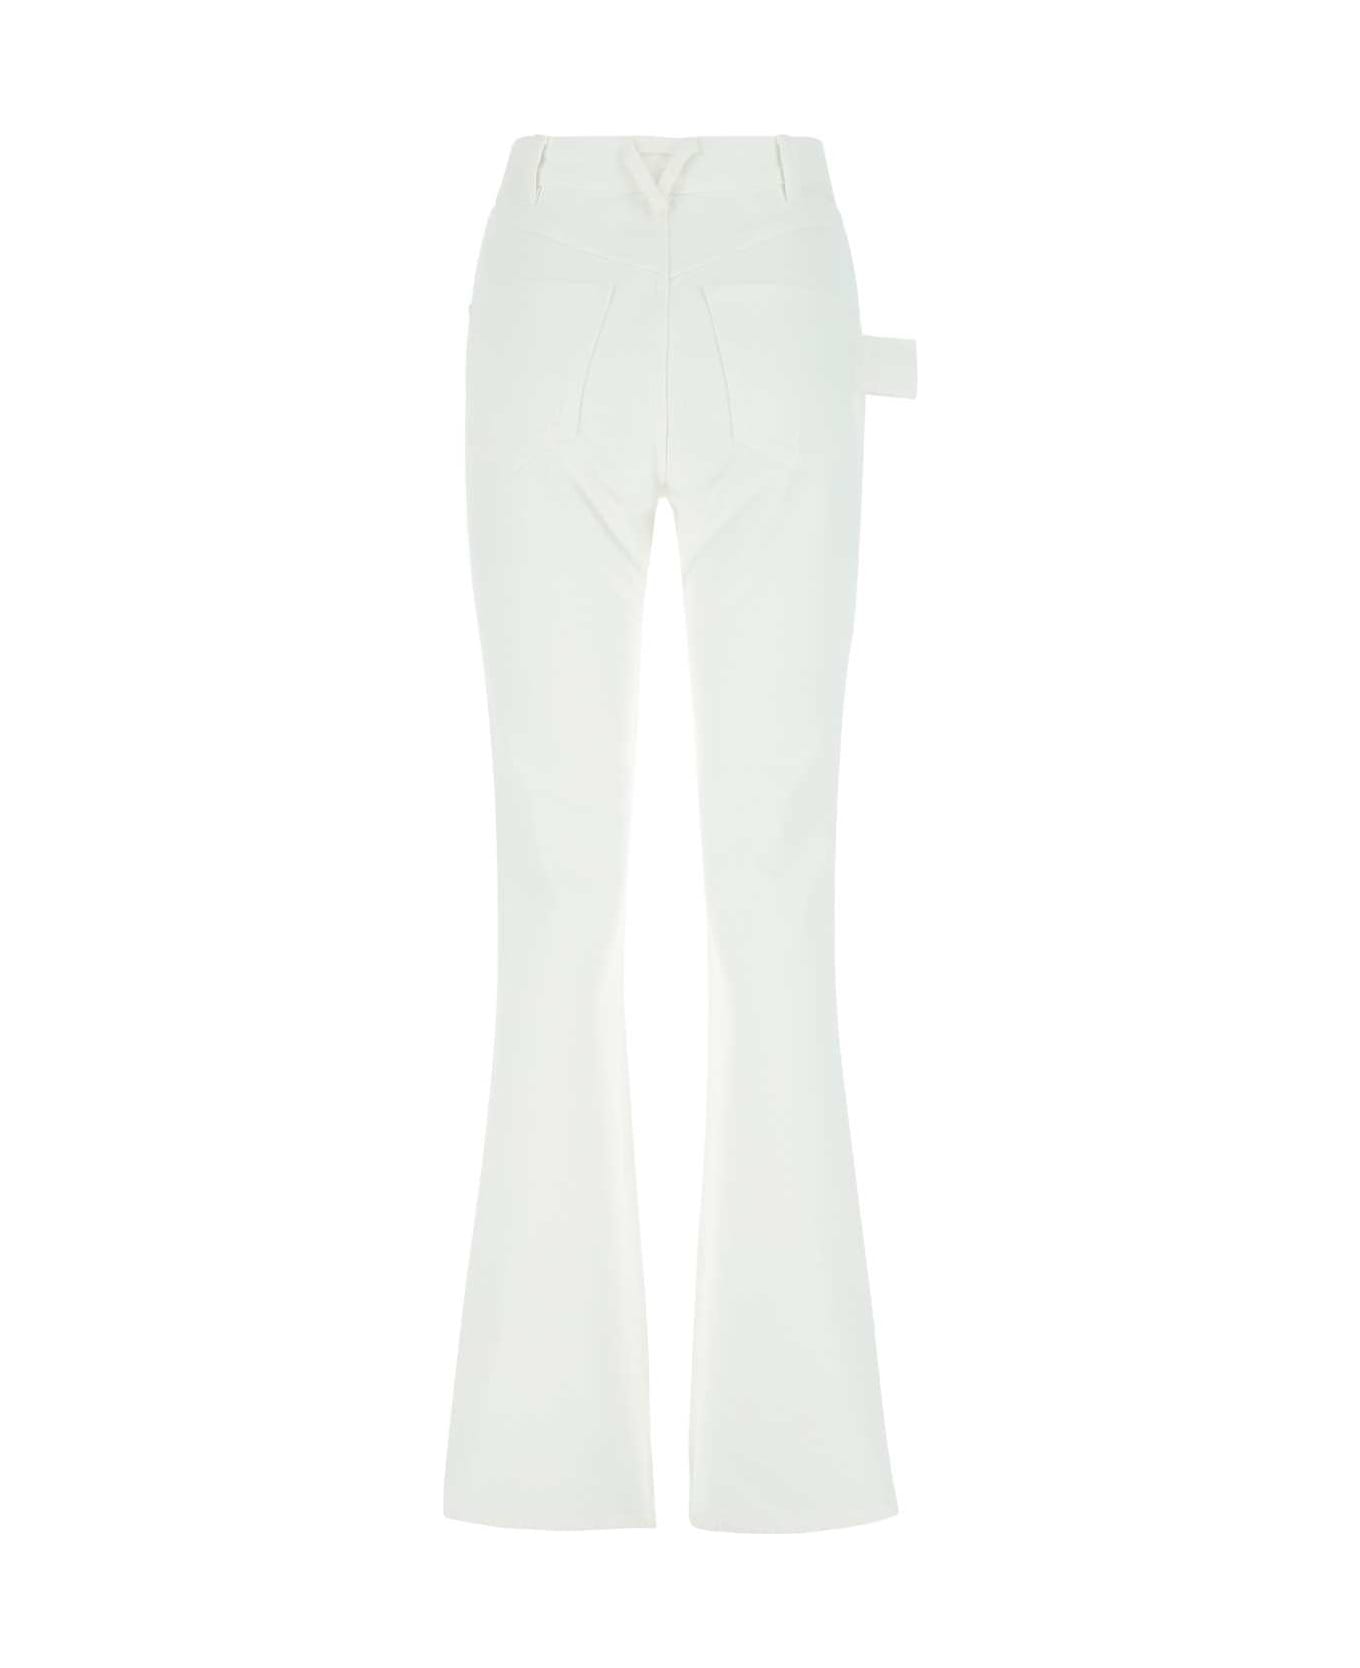 Bottega Veneta White Denim Jeans - 9000 ボトムス